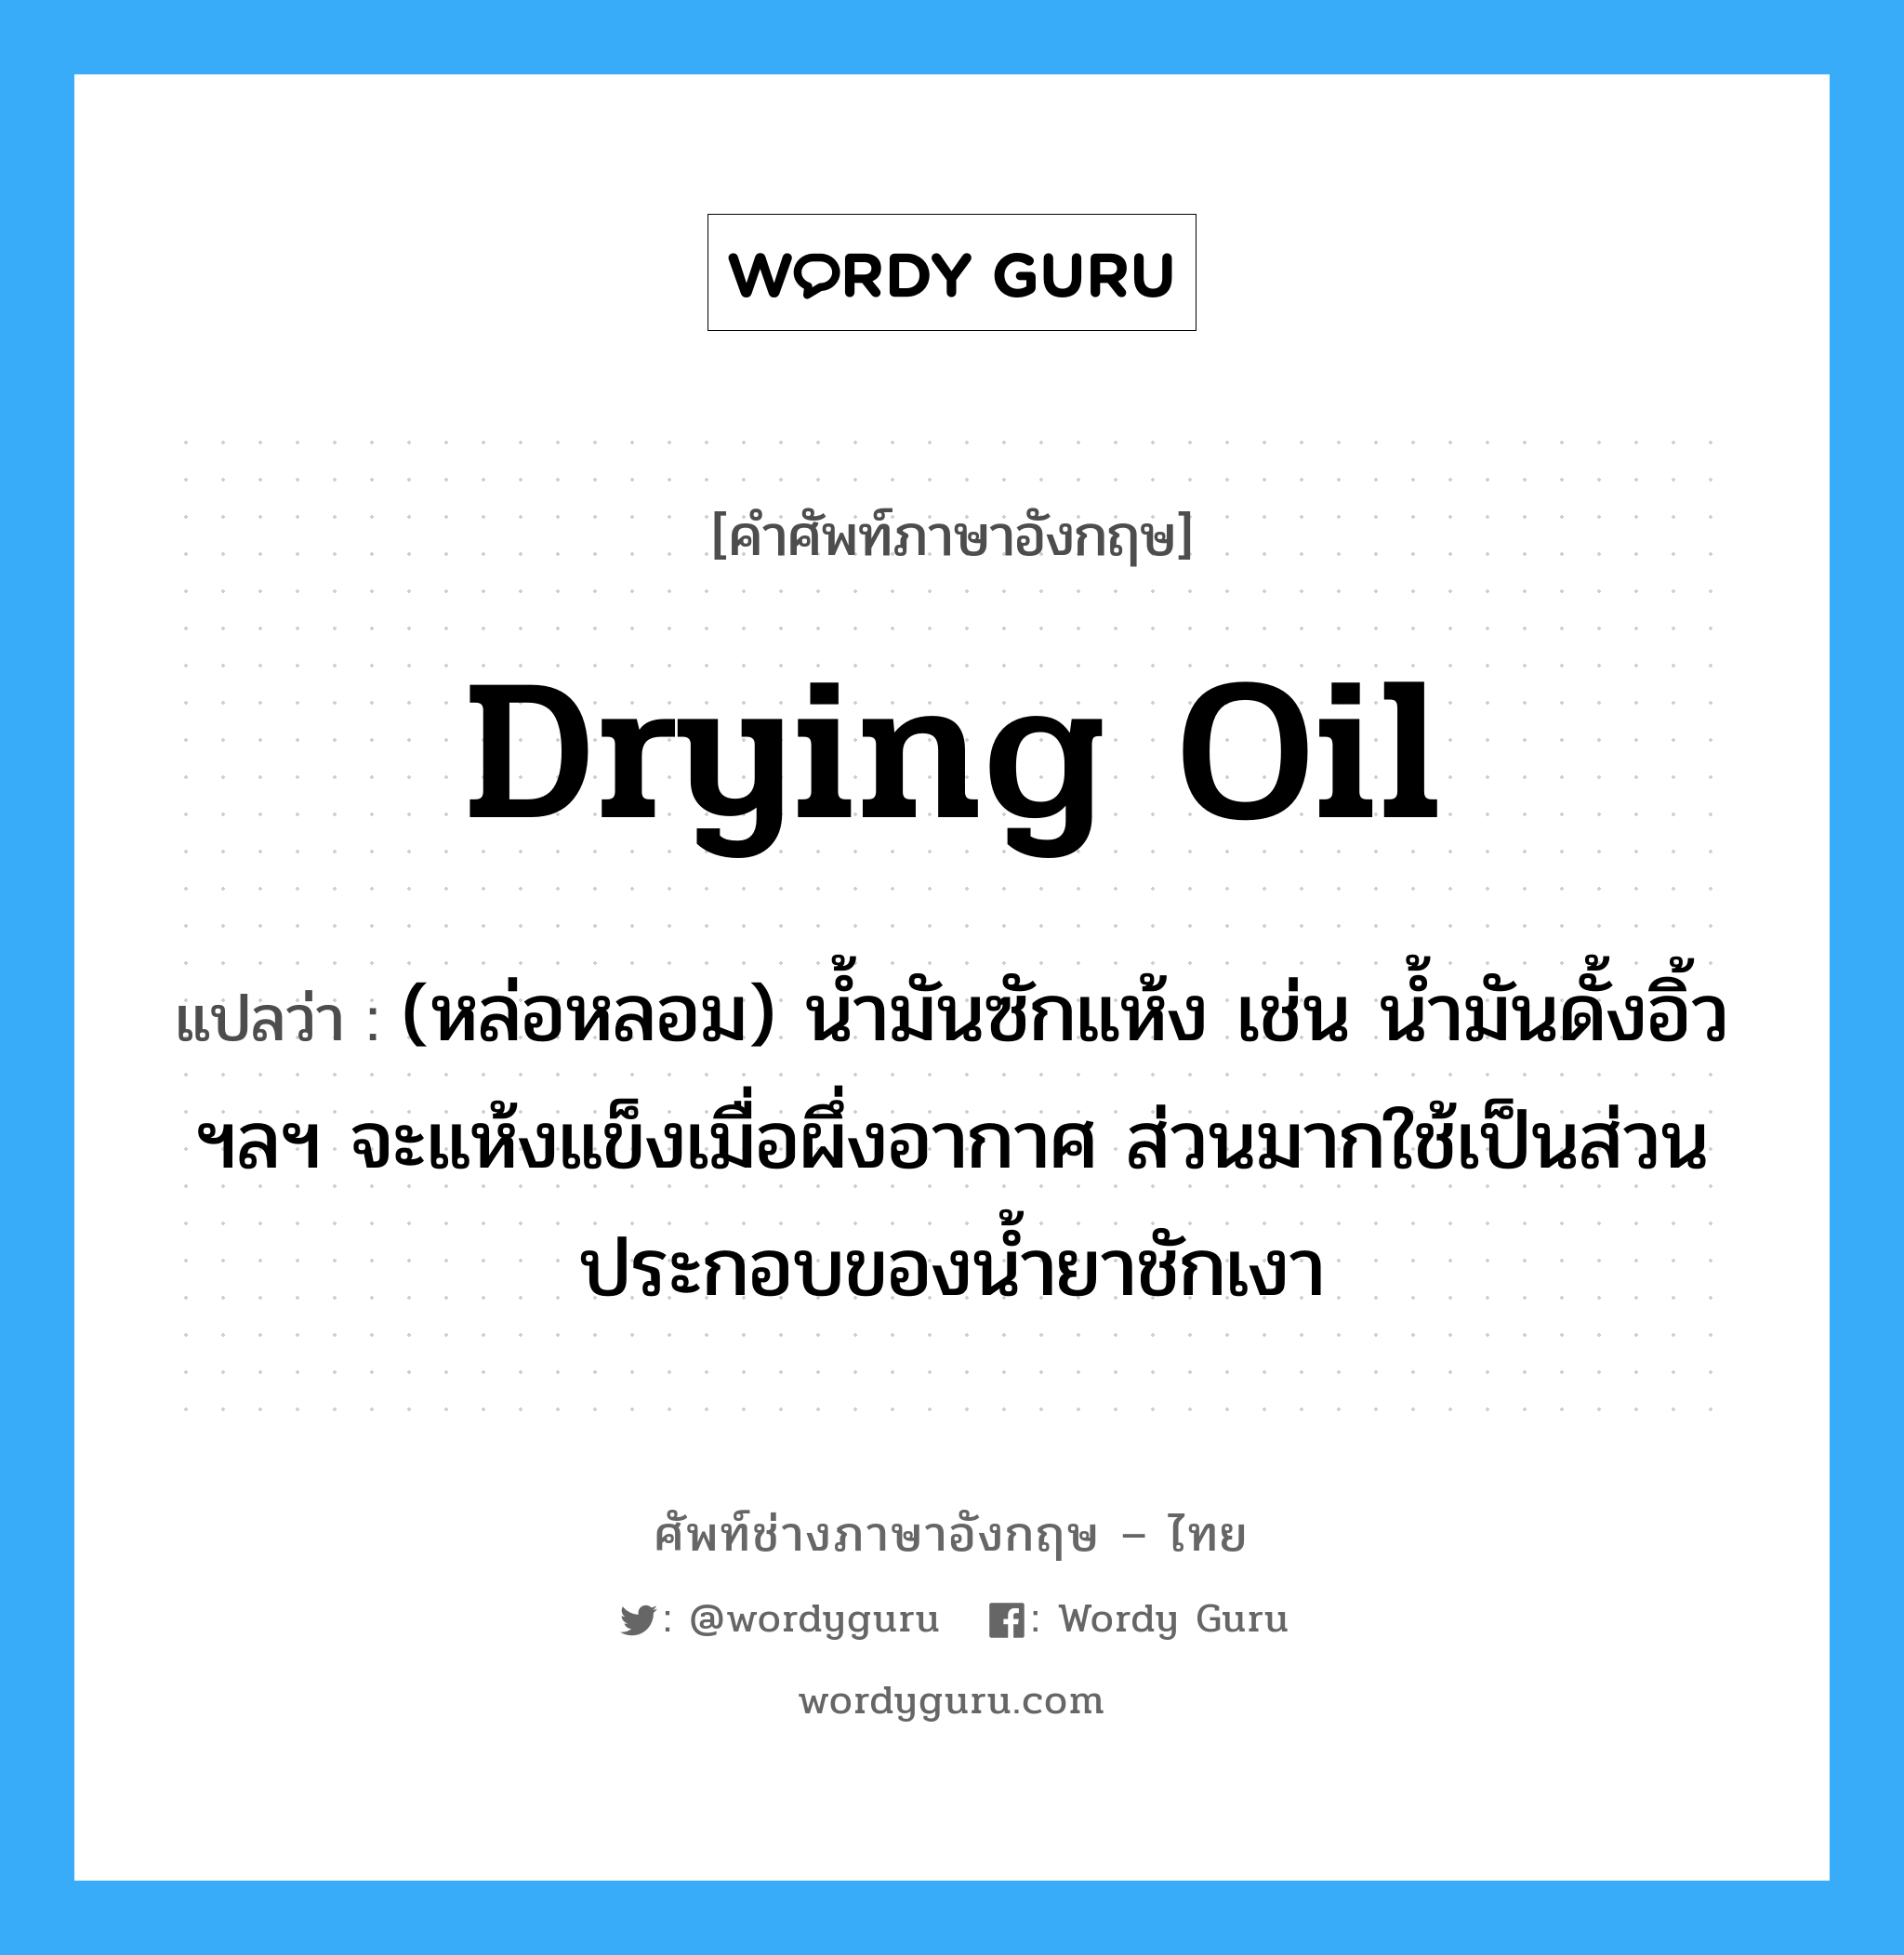 drying oil แปลว่า?, คำศัพท์ช่างภาษาอังกฤษ - ไทย drying oil คำศัพท์ภาษาอังกฤษ drying oil แปลว่า (หล่อหลอม) น้ำมันซักแห้ง เช่น น้ำมันดั้งอิ้ว ฯลฯ จะแห้งแข็งเมื่อผึ่งอากาศ ส่วนมากใช้เป็นส่วนประกอบของน้ำยาชักเงา